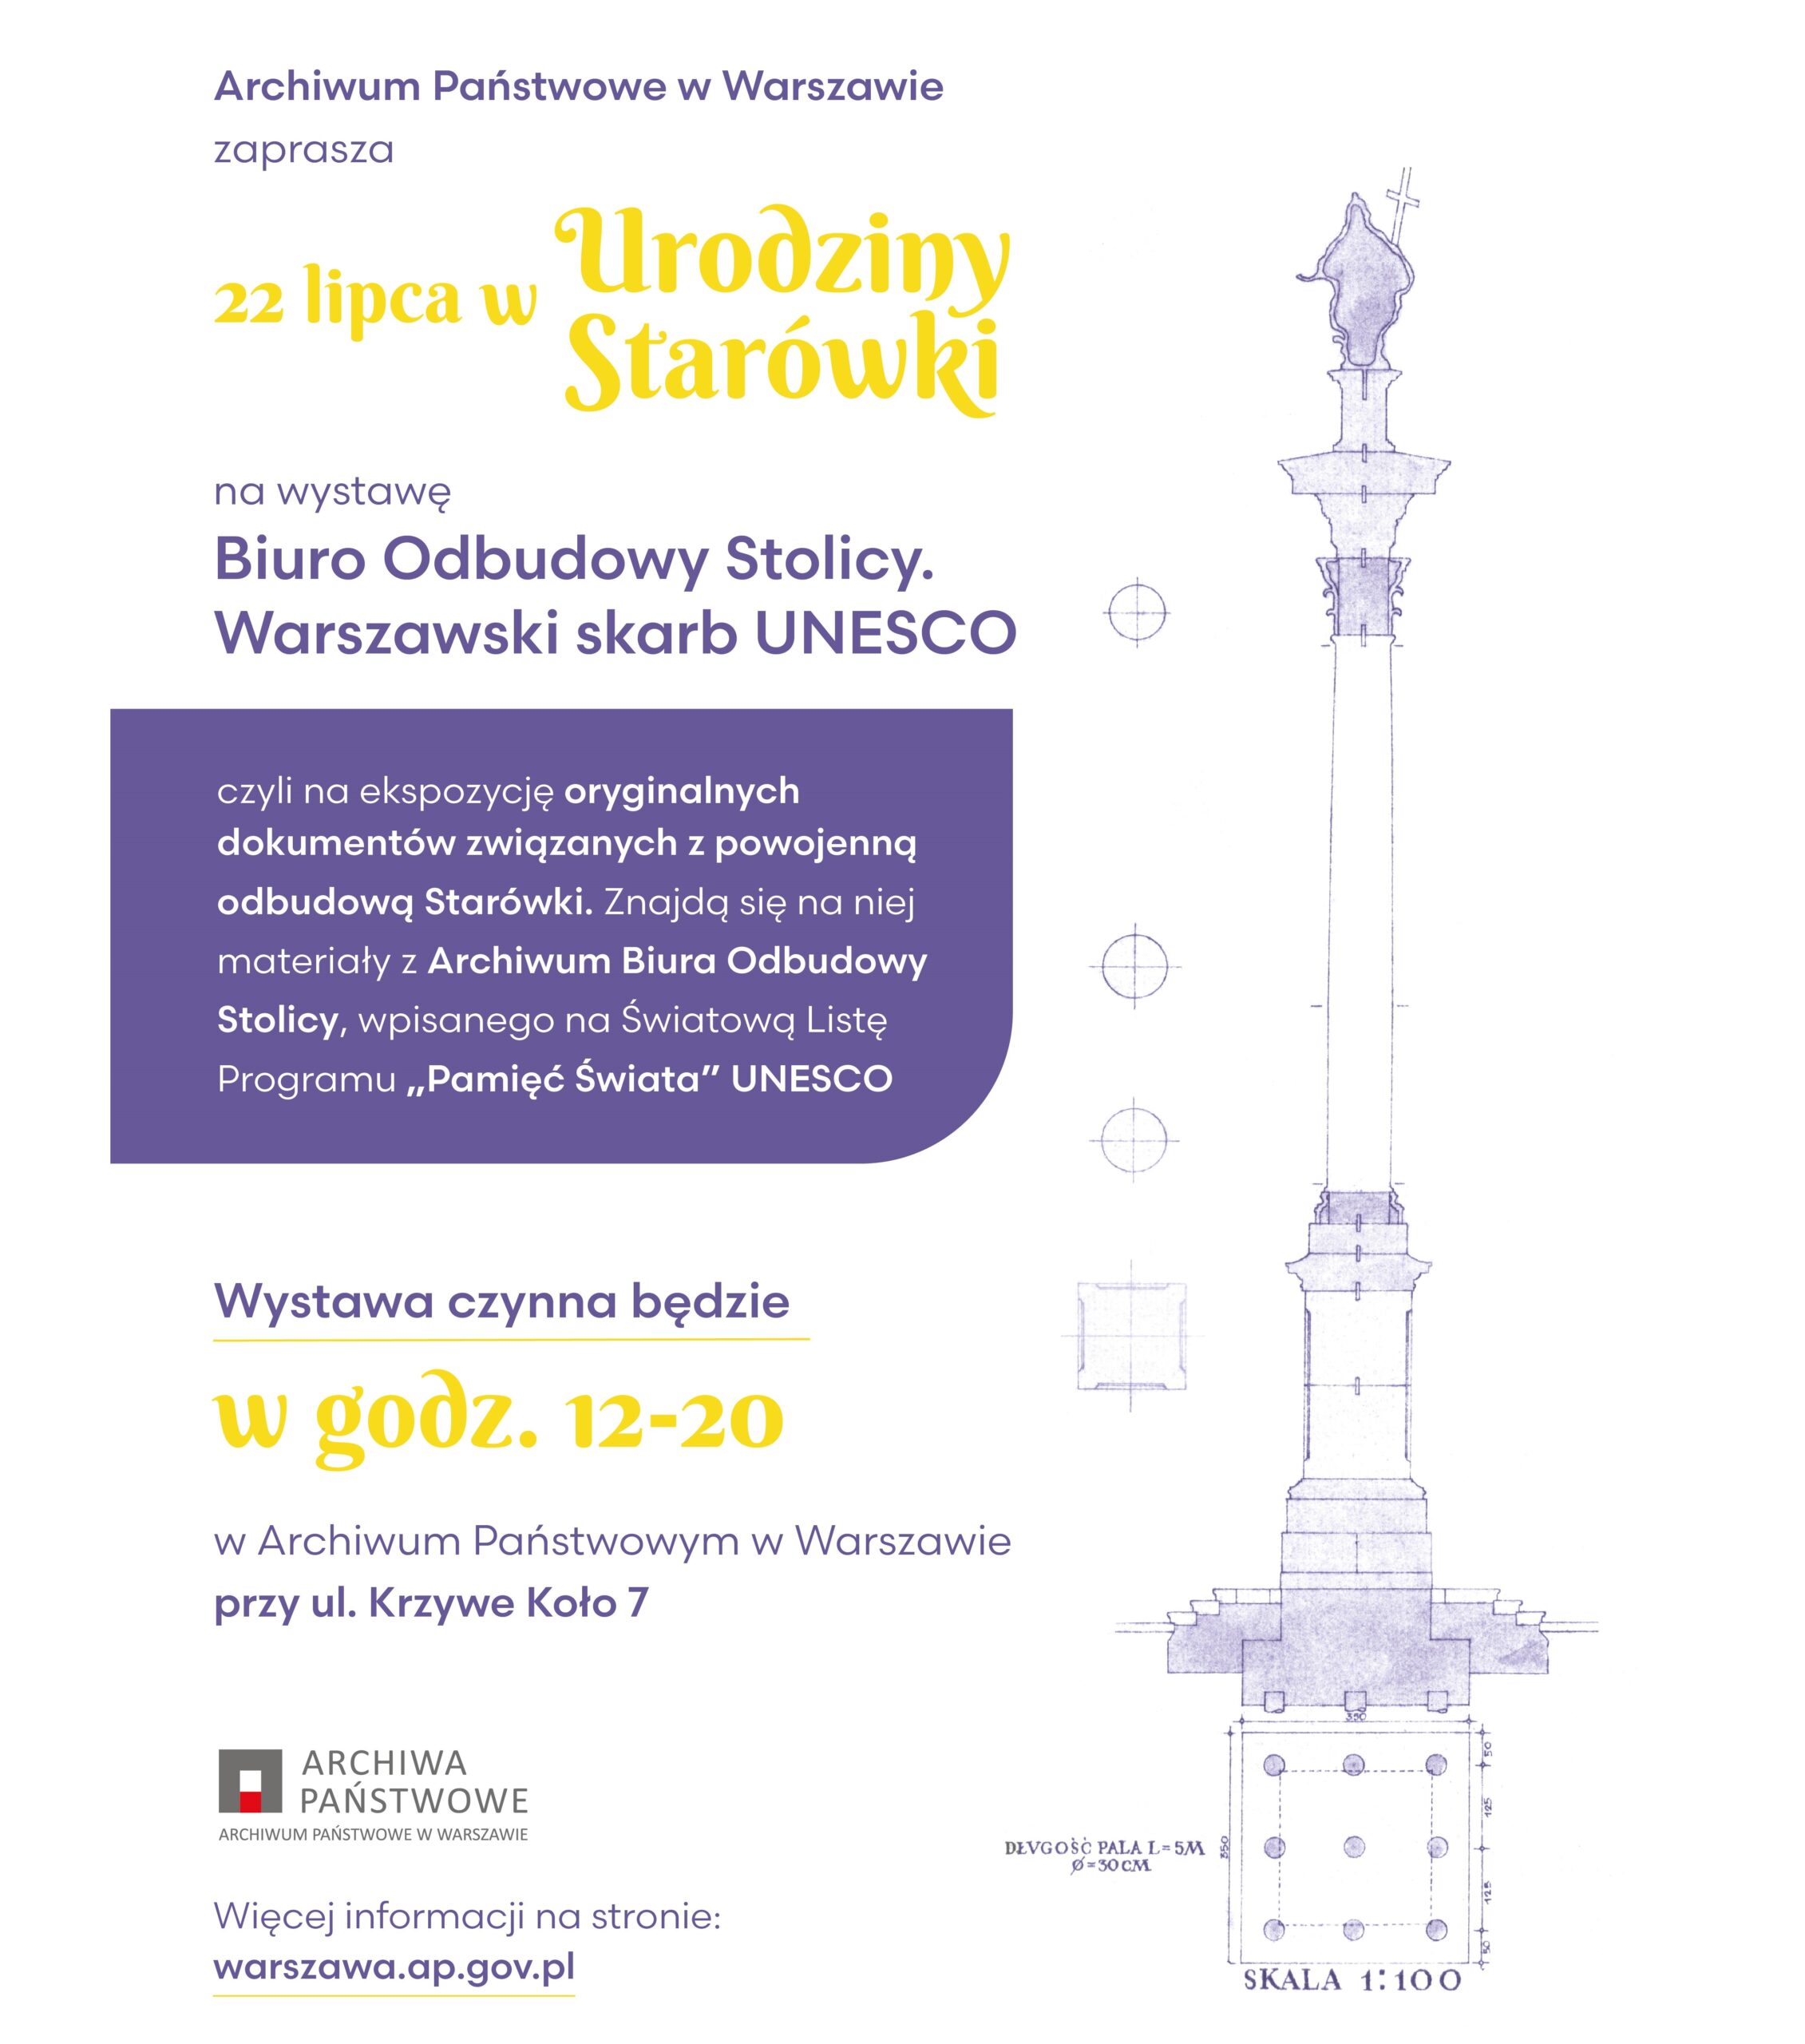 Plakat promujący wystawę z okazji Urodzin Starówki w Warszawie